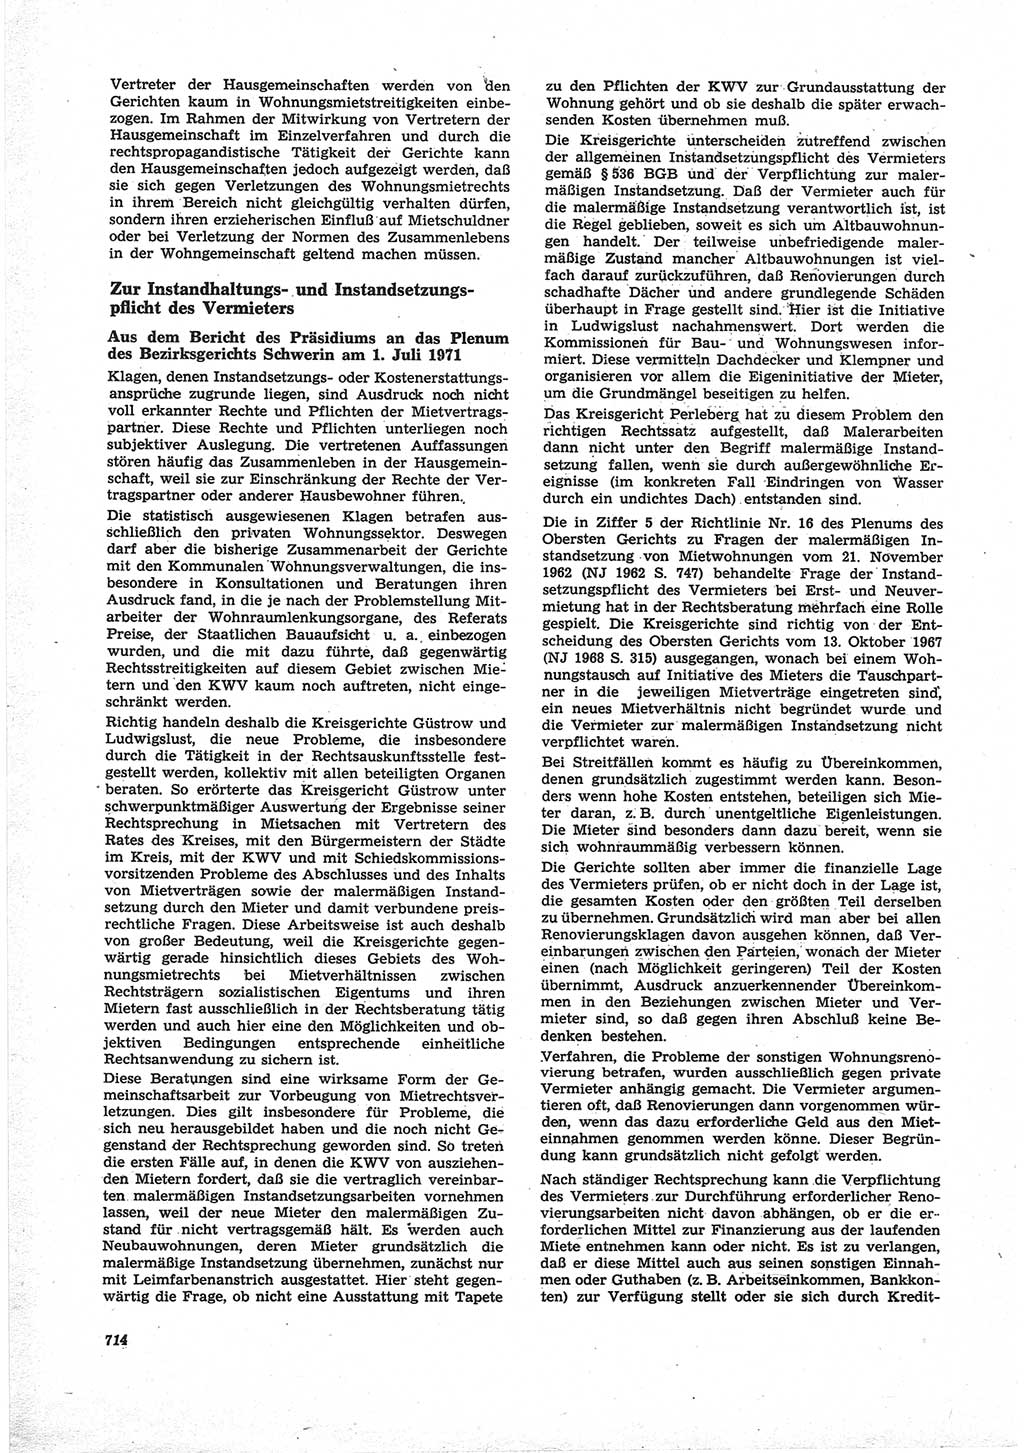 Neue Justiz (NJ), Zeitschrift für Recht und Rechtswissenschaft [Deutsche Demokratische Republik (DDR)], 25. Jahrgang 1971, Seite 714 (NJ DDR 1971, S. 714)